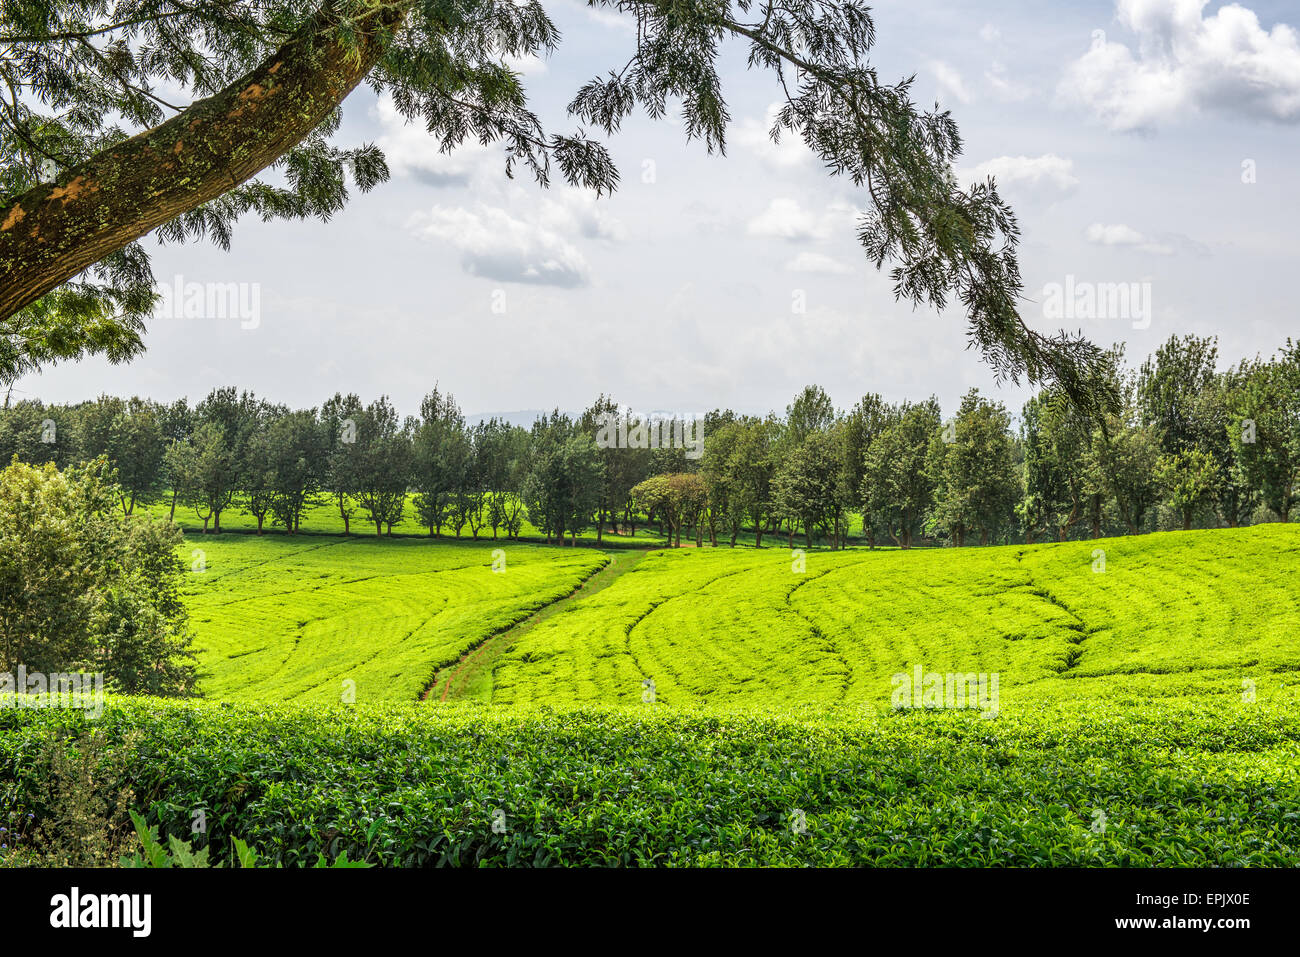 Tea plantation in Ethiopia Stock Photo